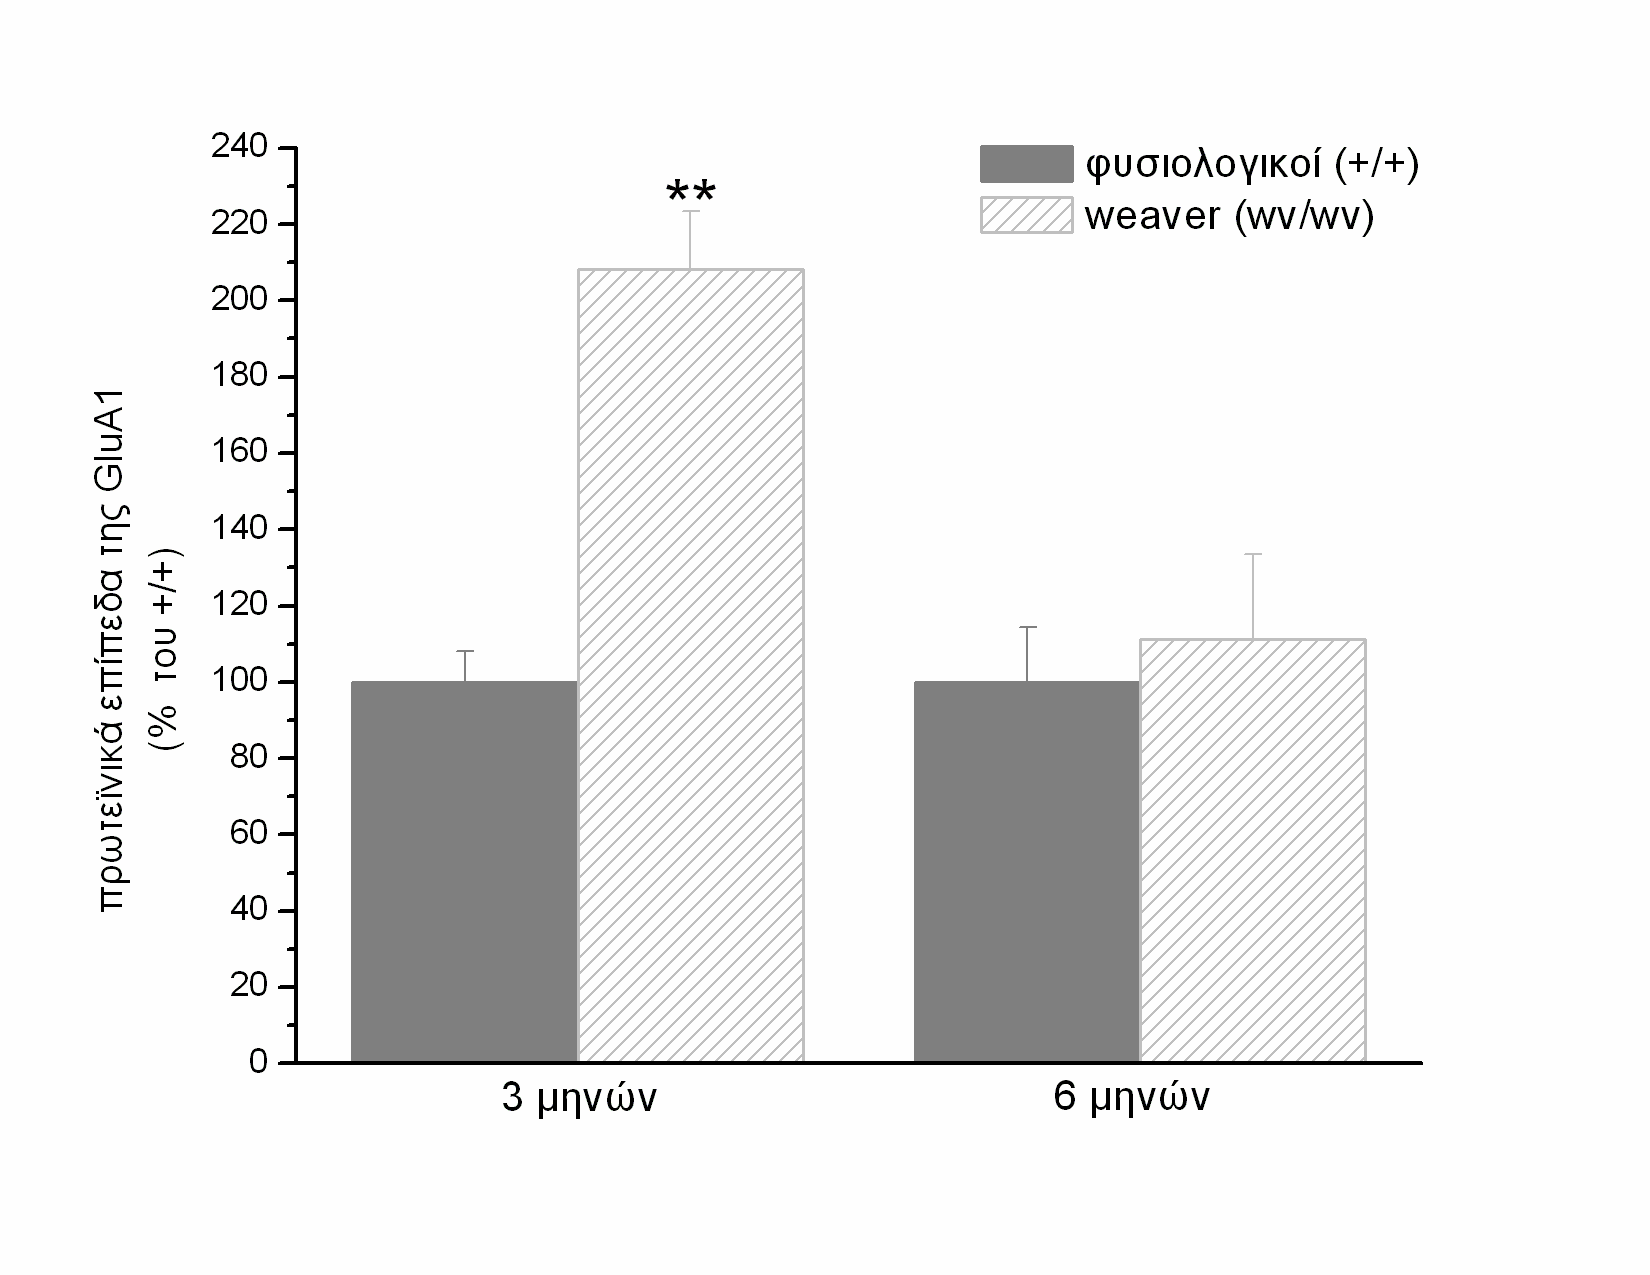 β-τουμπουλίνης (55ΚDa), που χρησιμοποιήθηκε ως εσωτερικό σημείο ελέγχου, σε μύες weaver (wv/wv) και φυσιολογικούς (+/+) ηλικίας 3 (A) και 6 (B) μηνών. Εικόνα 22.